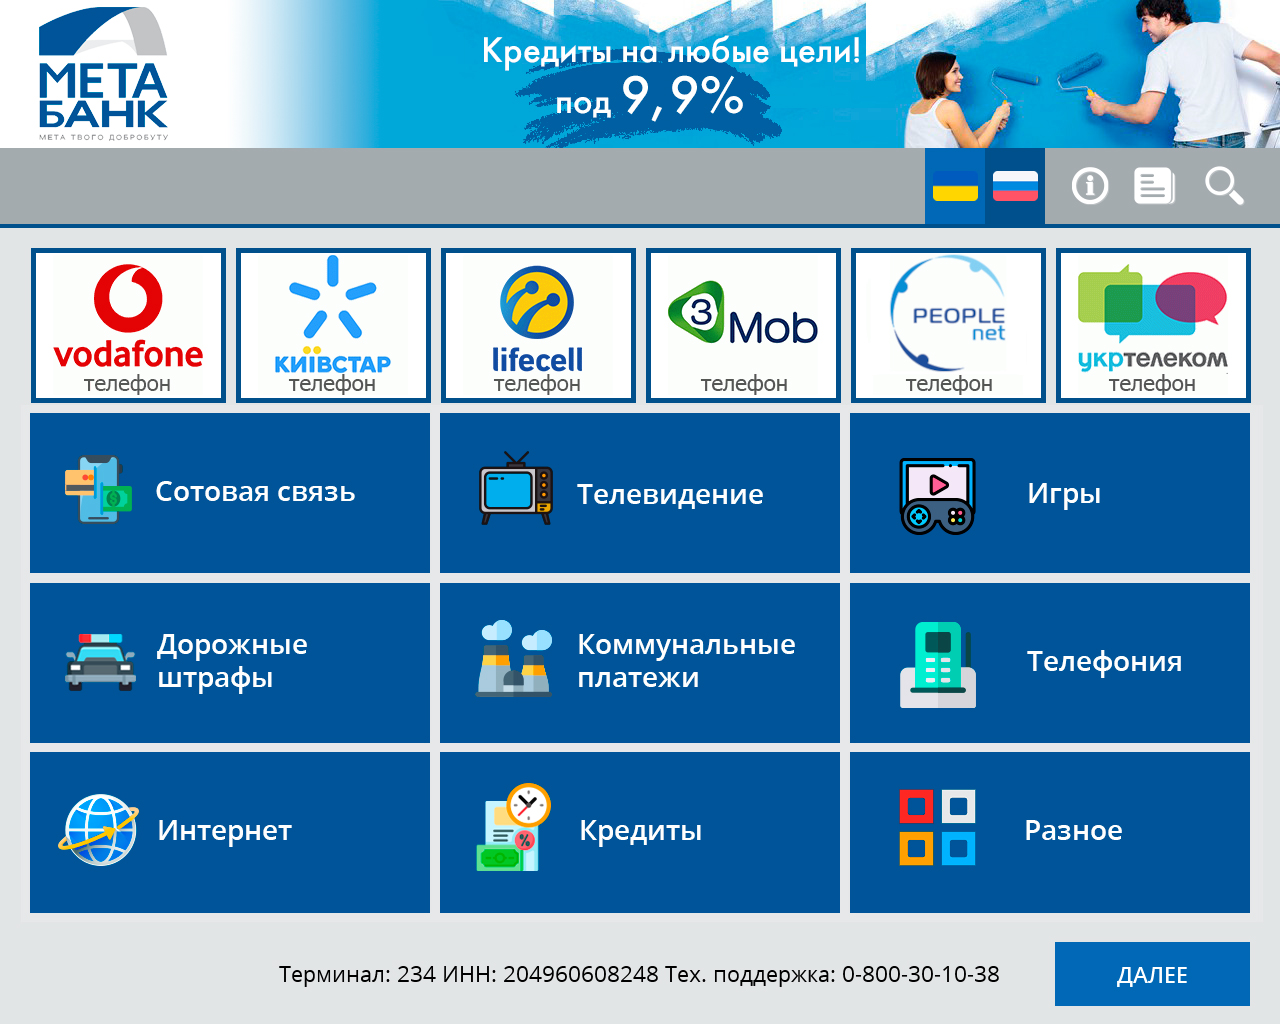 МетаБанк (Украина) автоматизирует прием платежей через сеть терминалов - рис.1